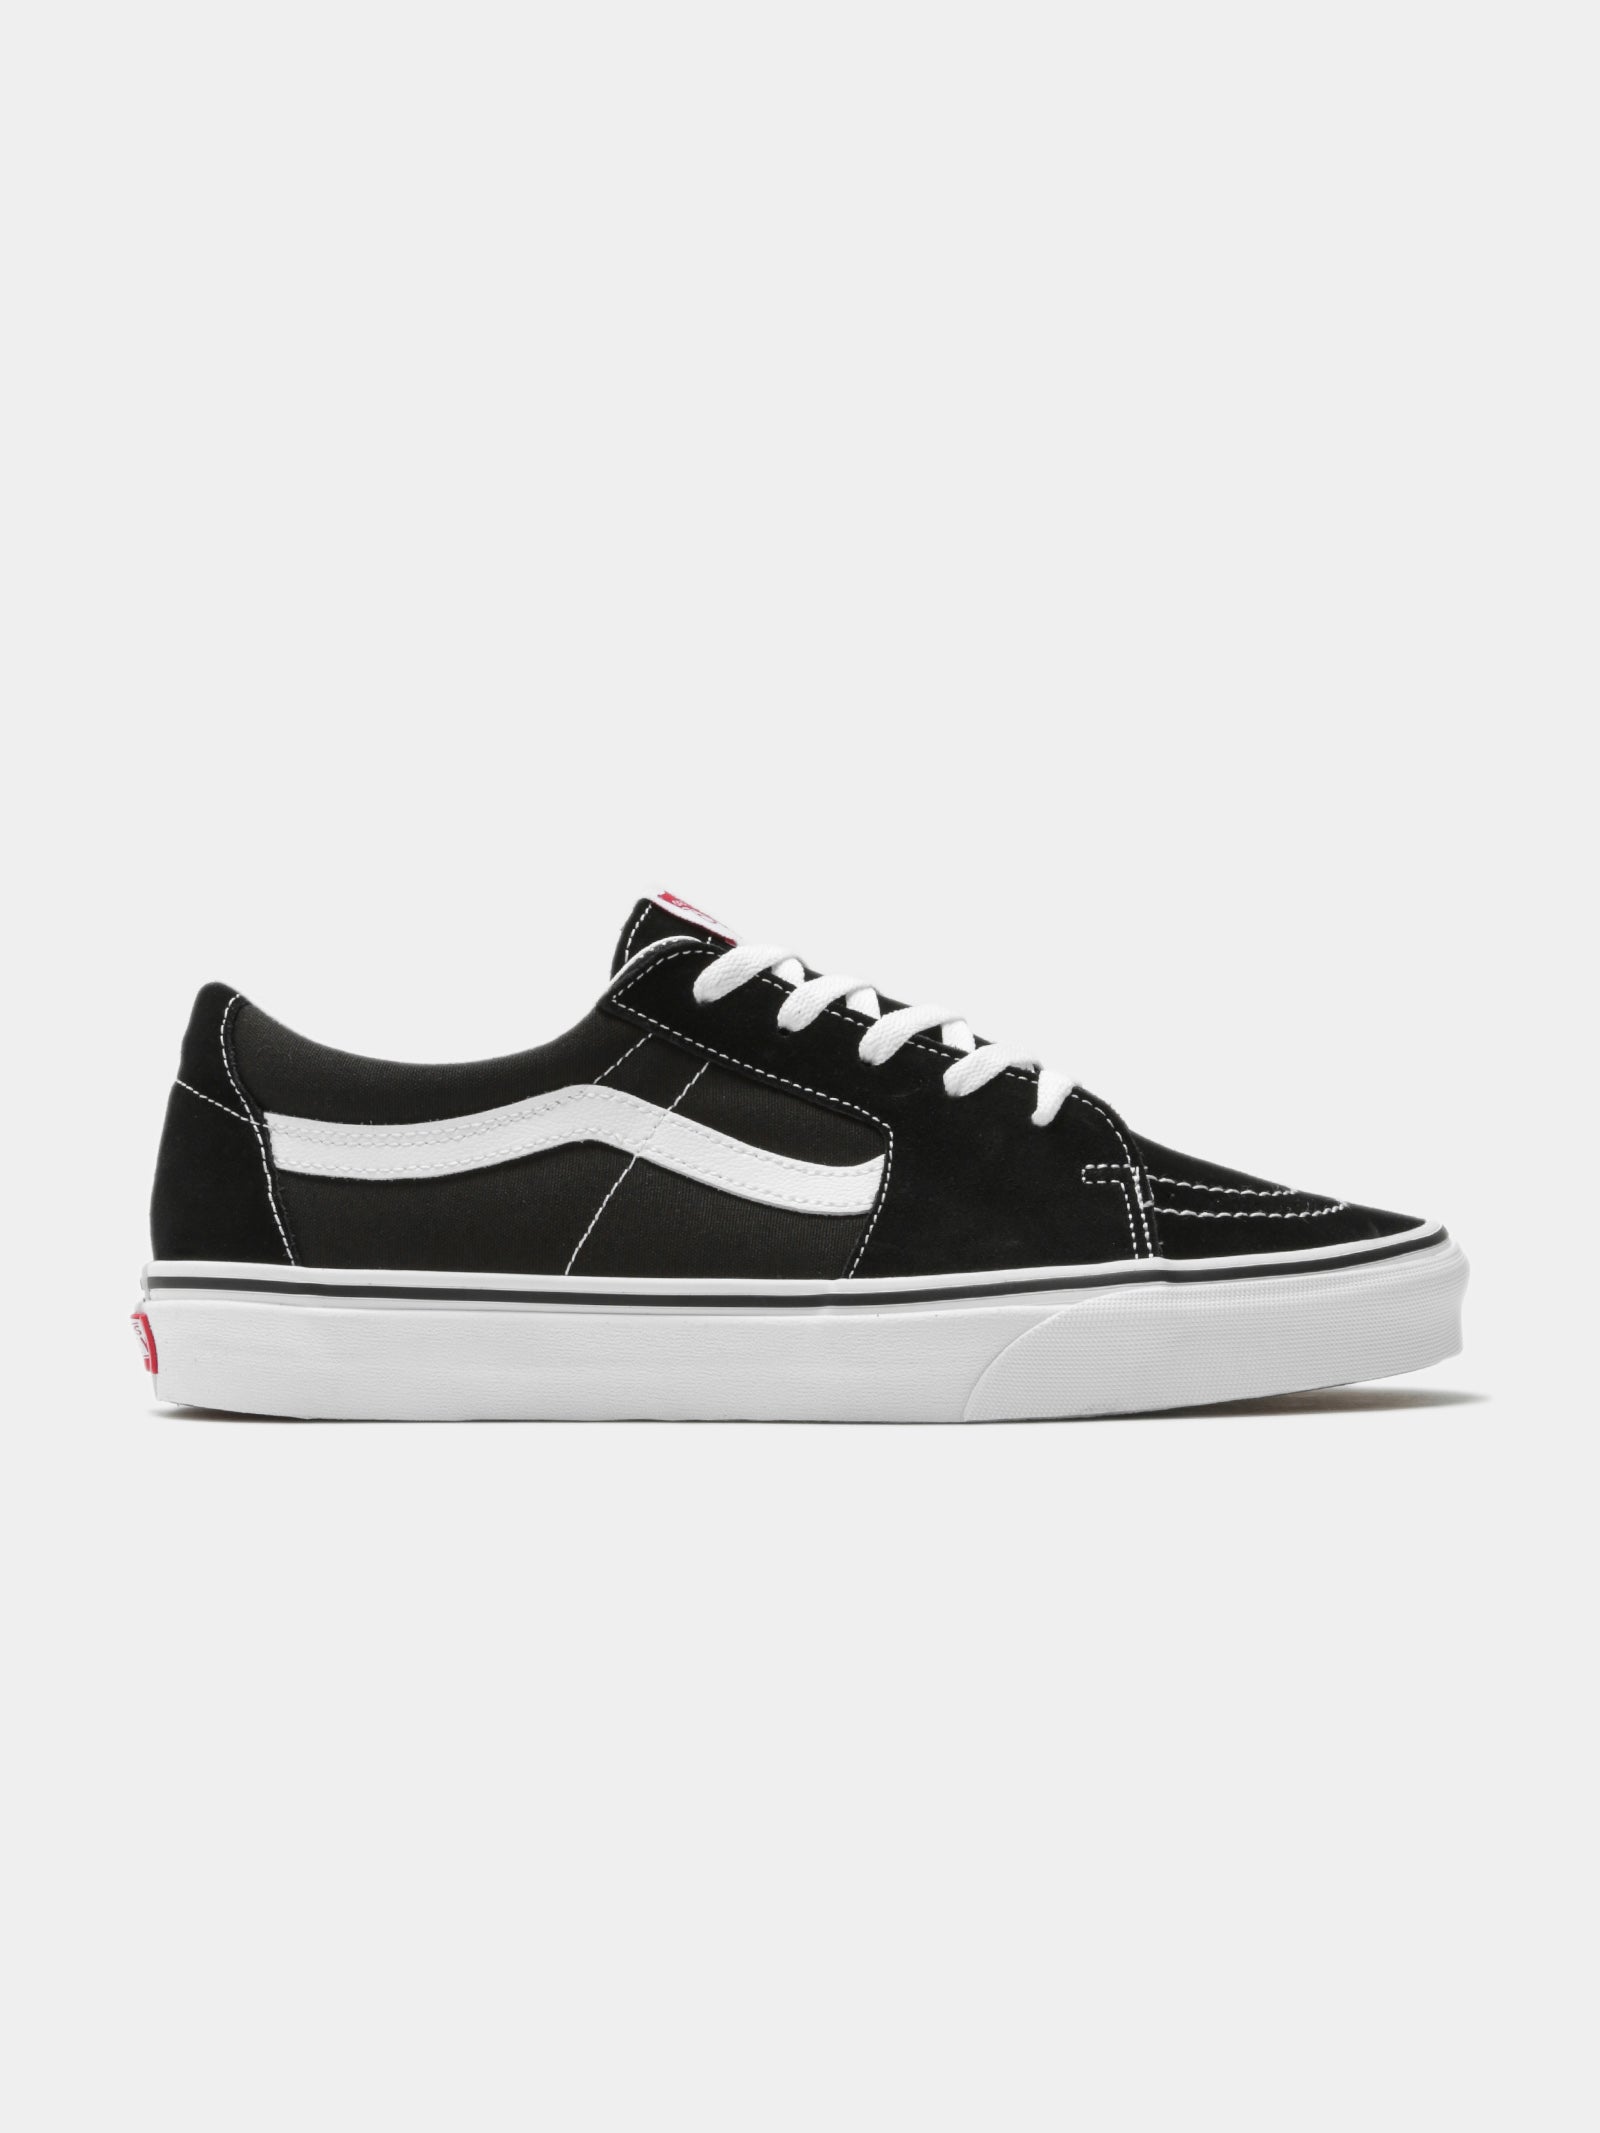 Vans Shoes \u0026 Sneakers | Footwear | Glue 